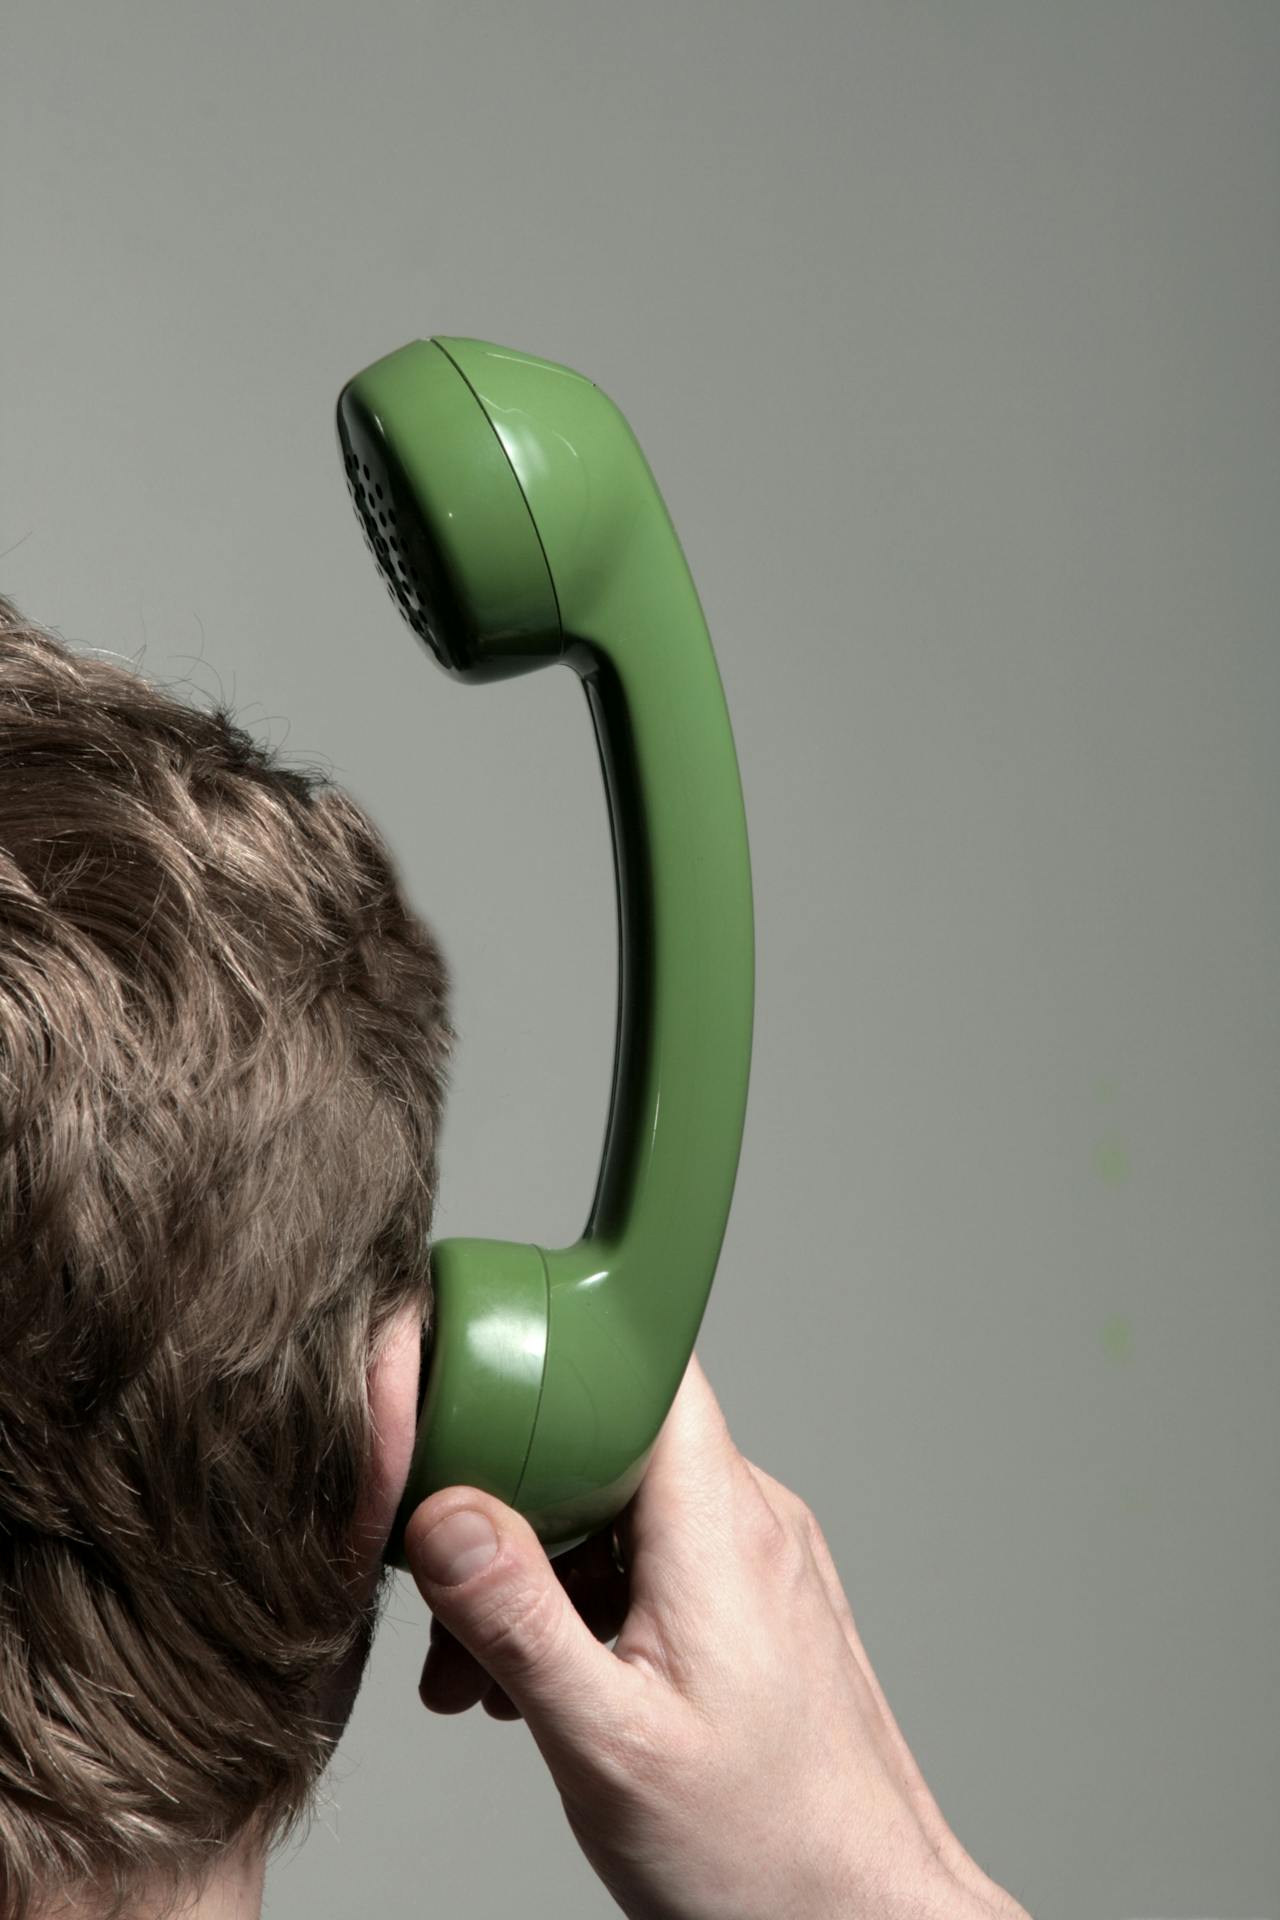 Mens met groene telefoonhoorn tegen diens oor.